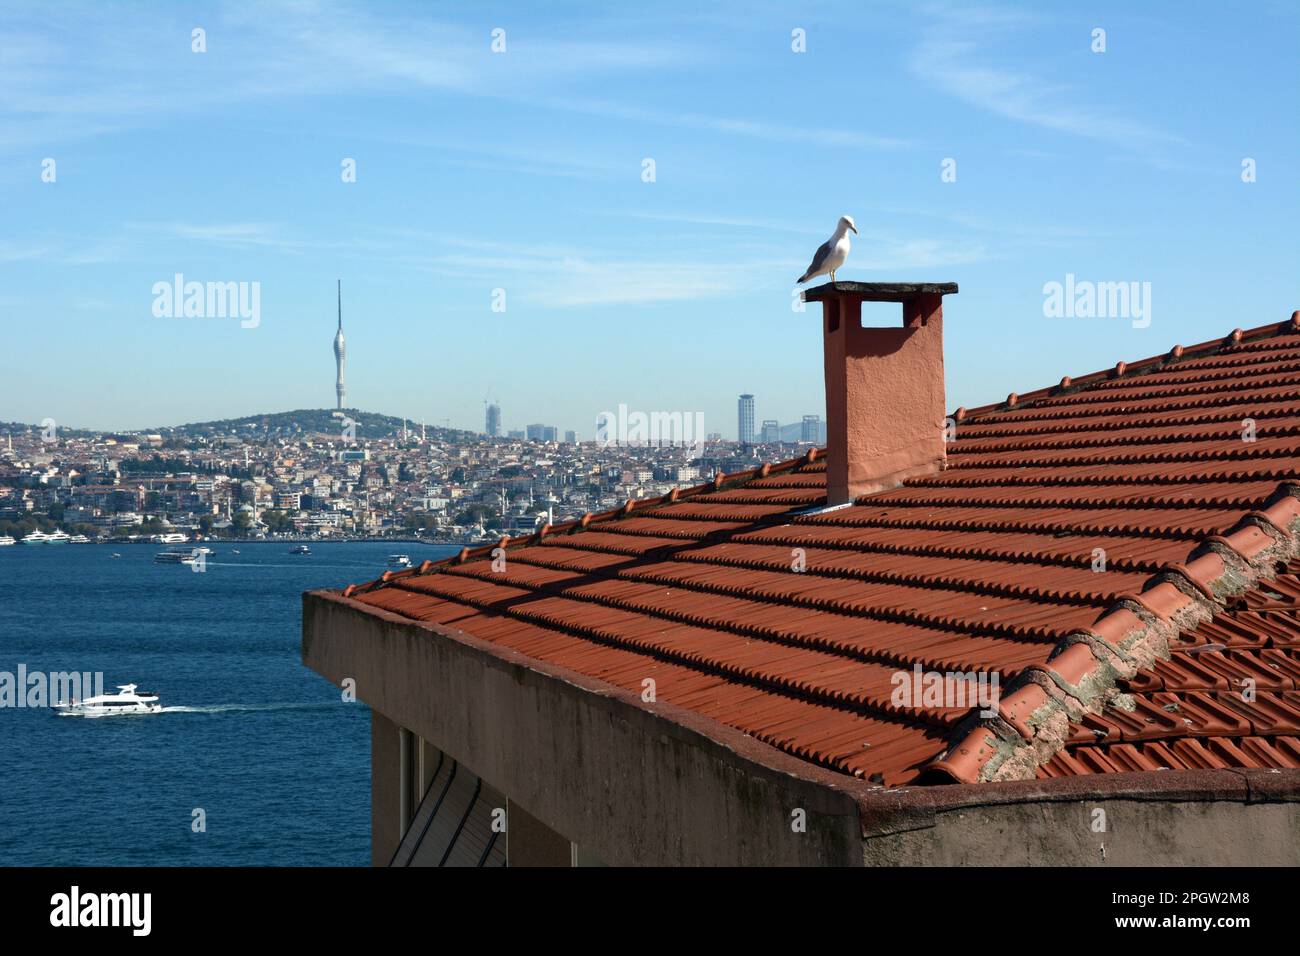 Blick über die Straße des Bosporus von Cihangir, Beyoglu auf der europäischen Seite nach Uskudar auf der asiatischen Seite von Istanbul, Turkiye/Türkei. Stockfoto